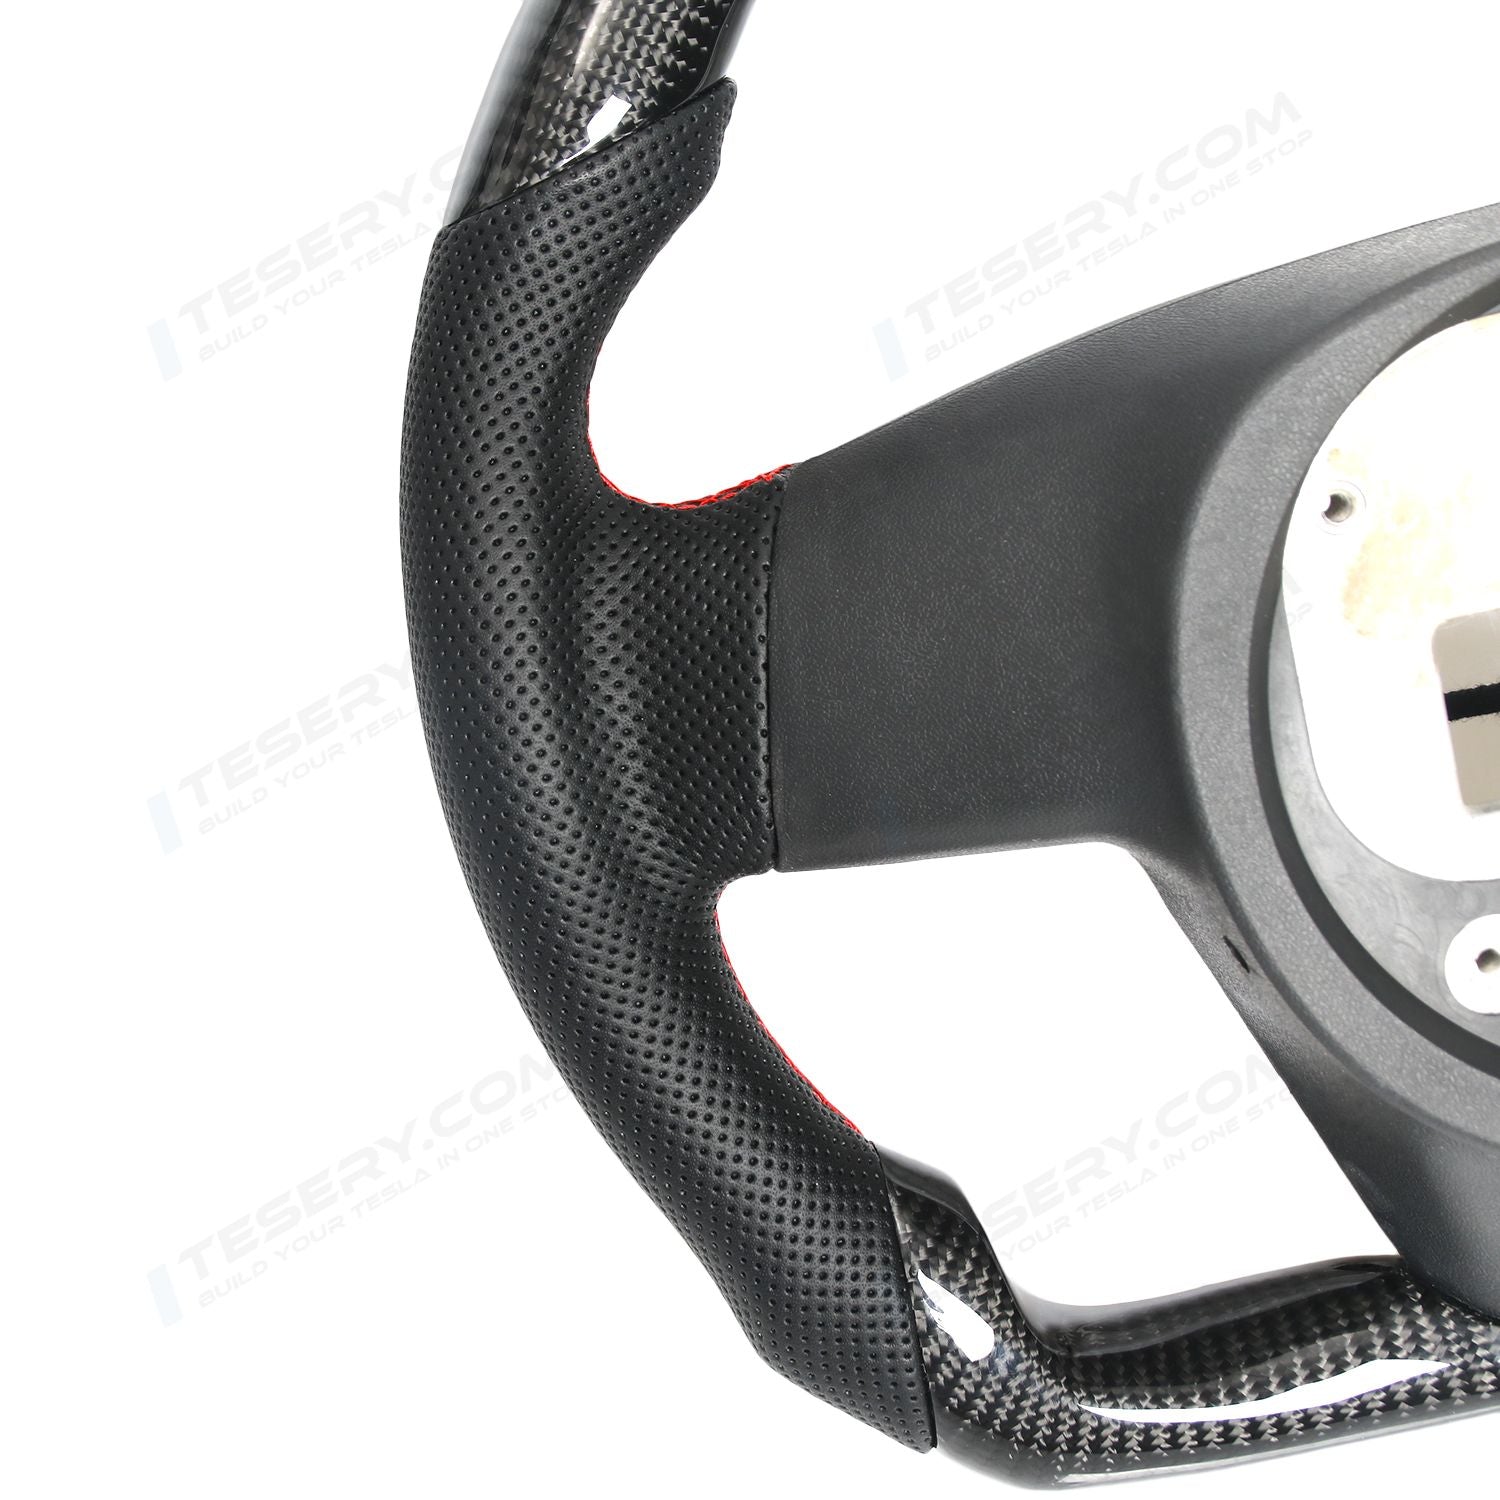 Model S LED Sport Carbon Fiber Steering Wheel 2021+【Style 3】 - Tesery Official Store